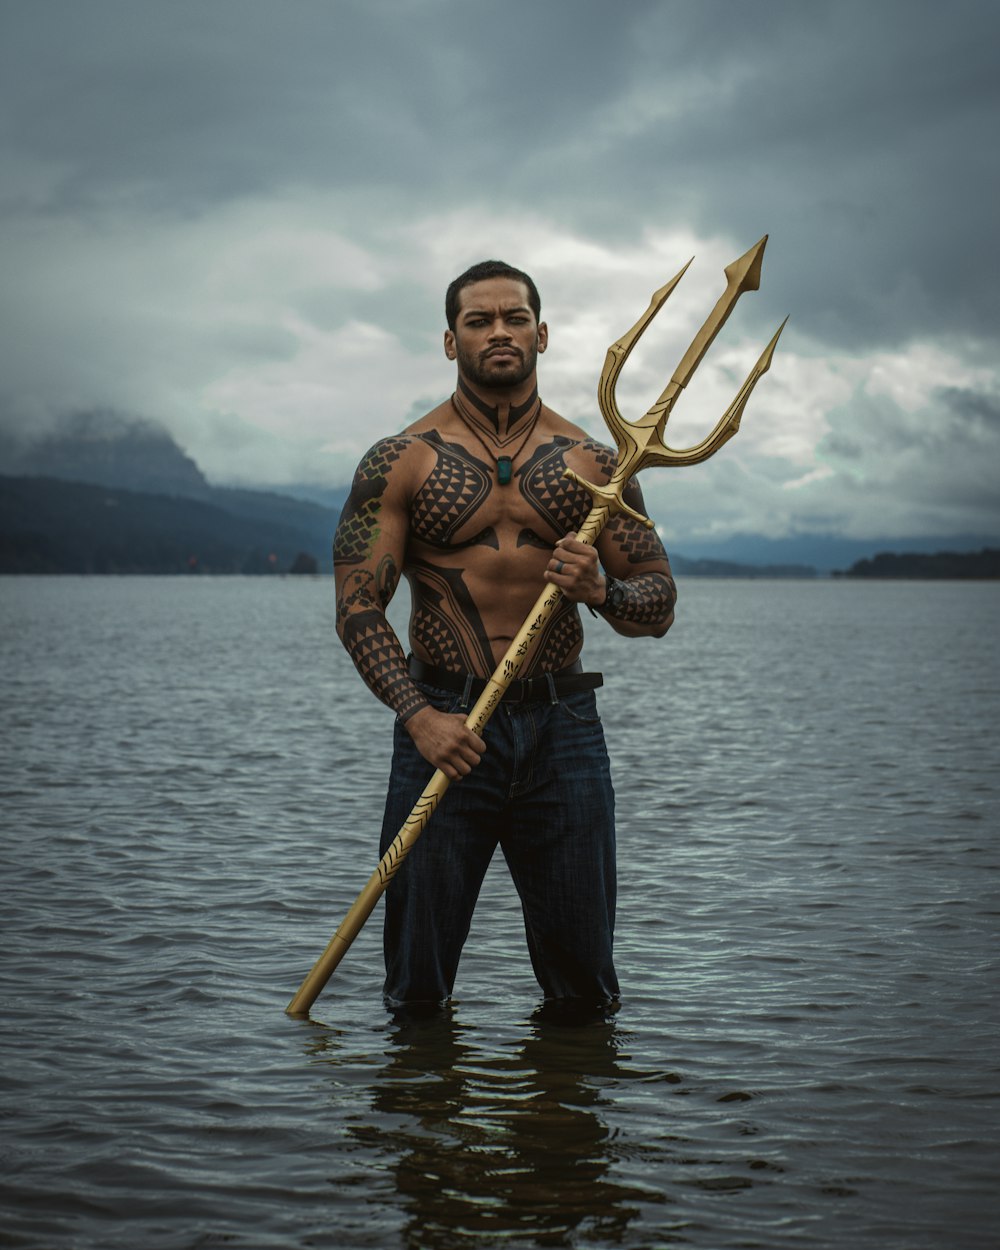 Un homme debout dans l’eau tenant un gros bâton